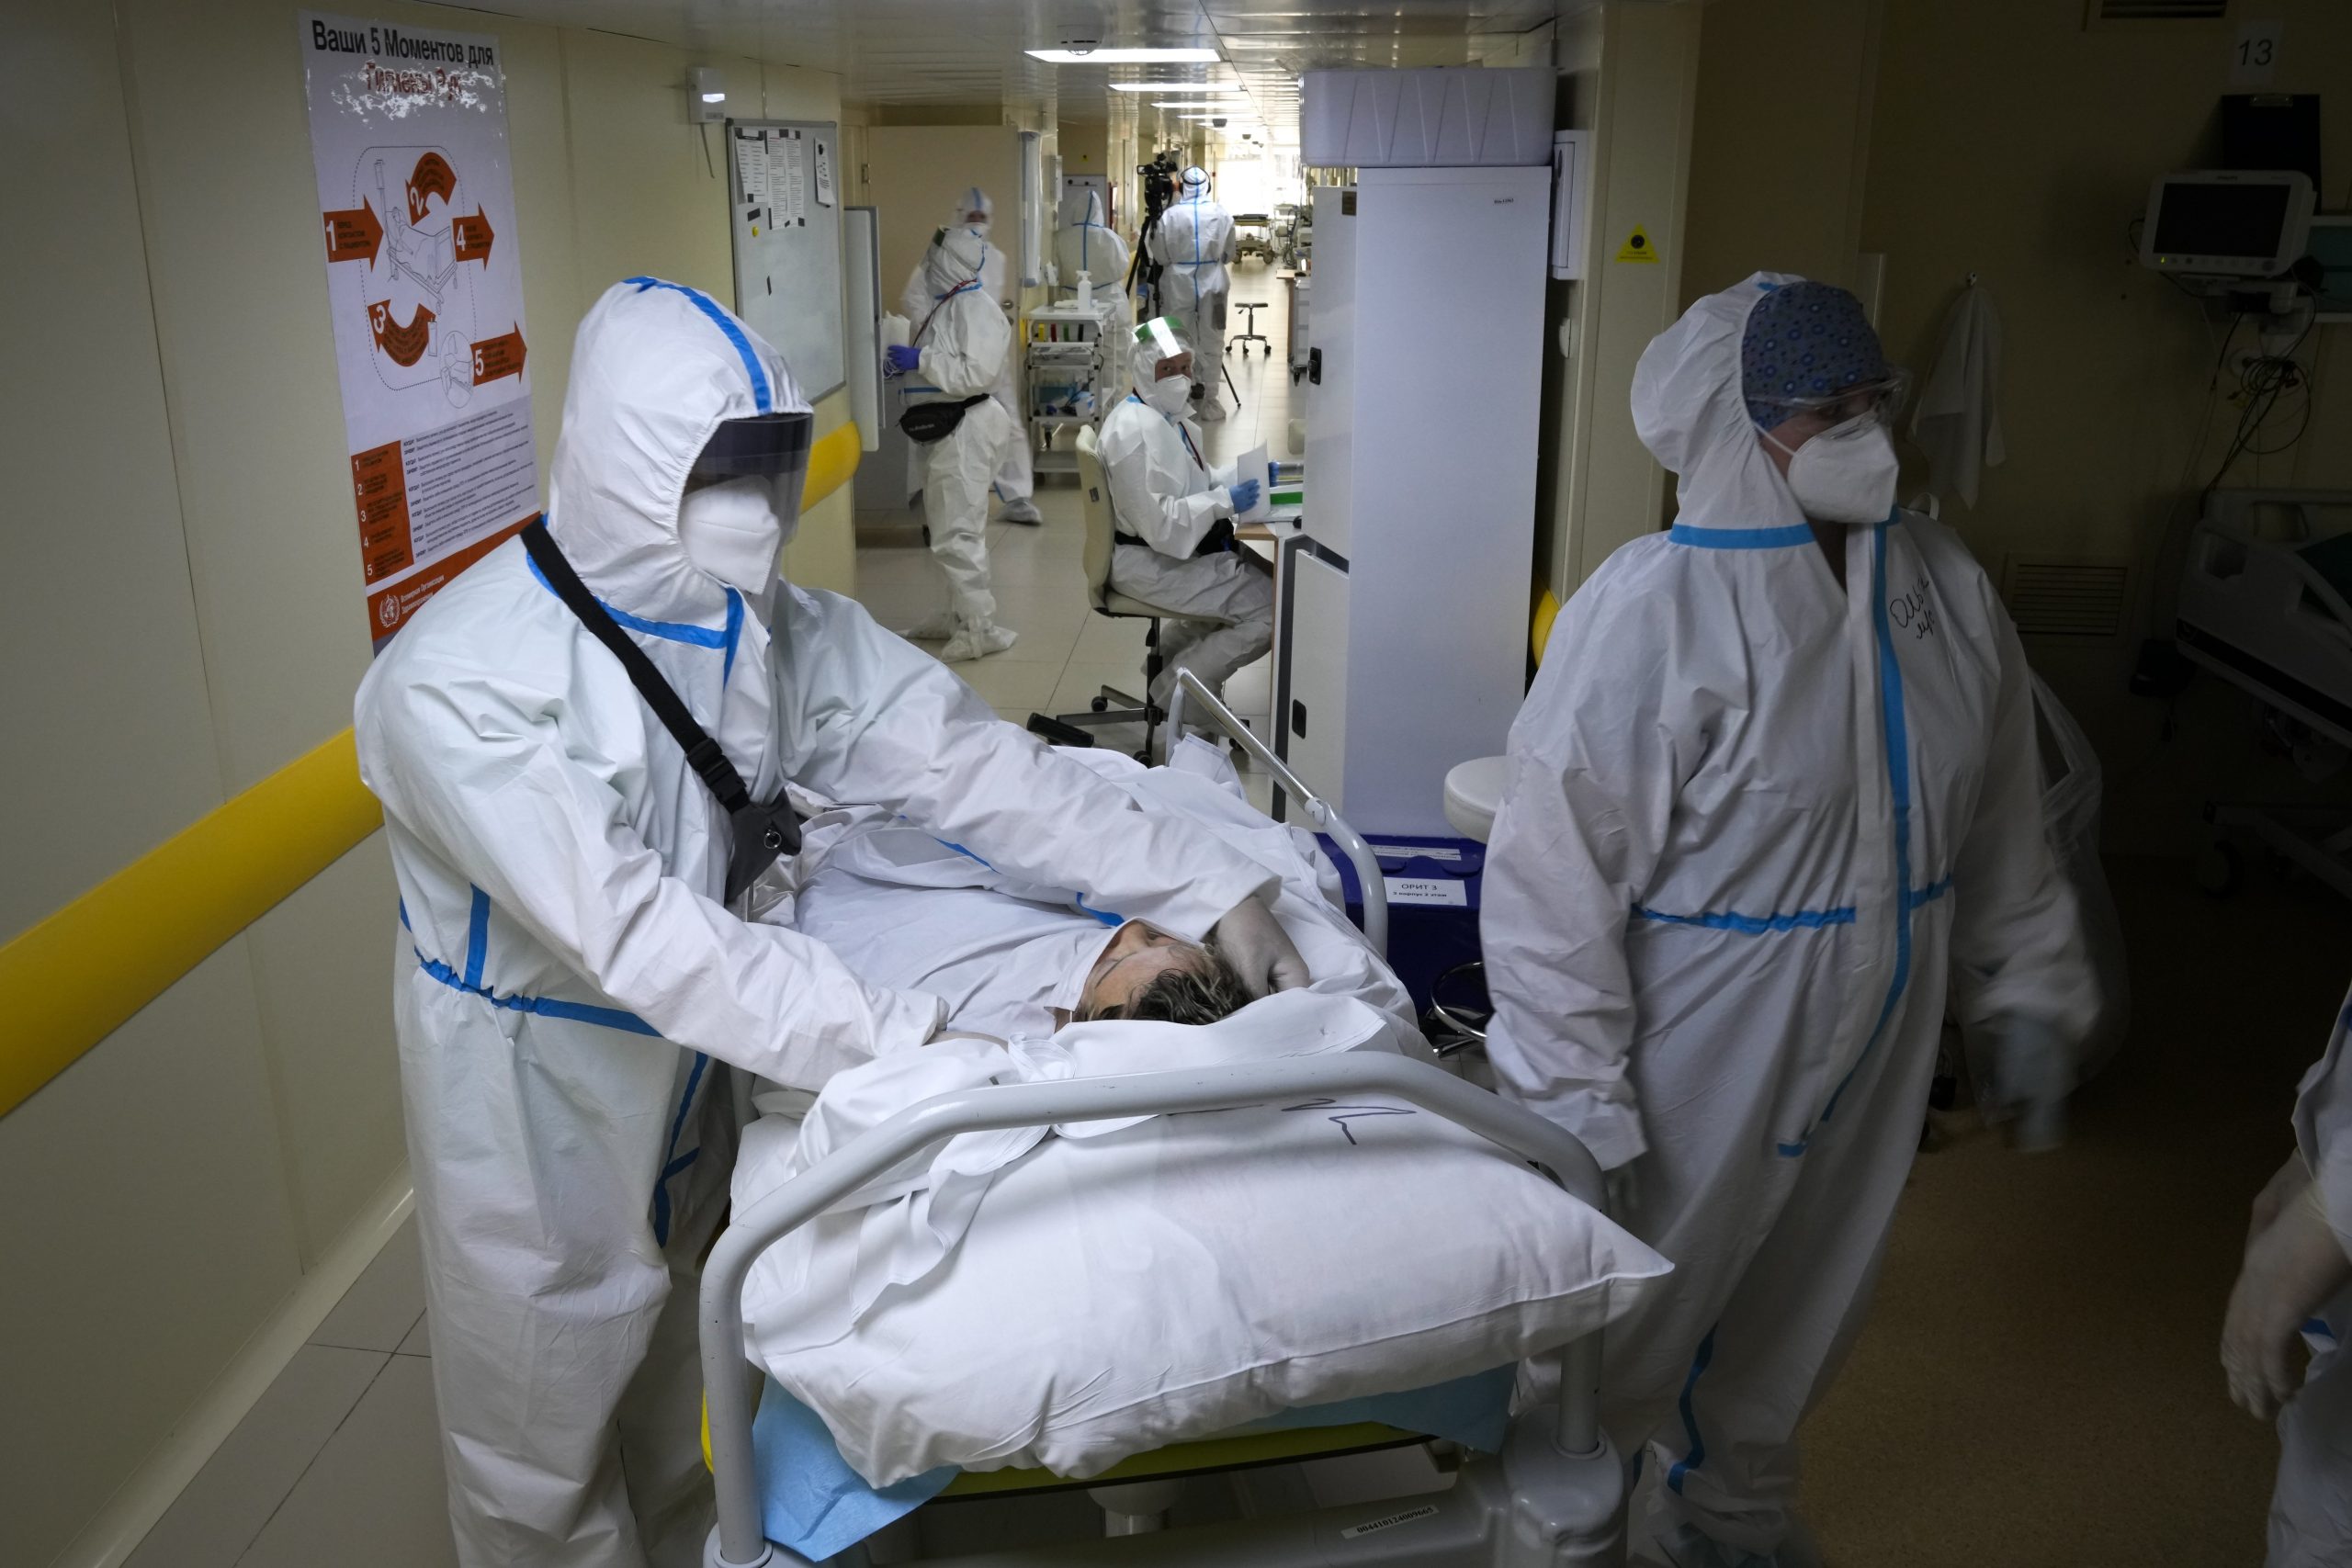 Mediziner in Schutzanzügen verlegen einen Corona-Patienten in Moskau.